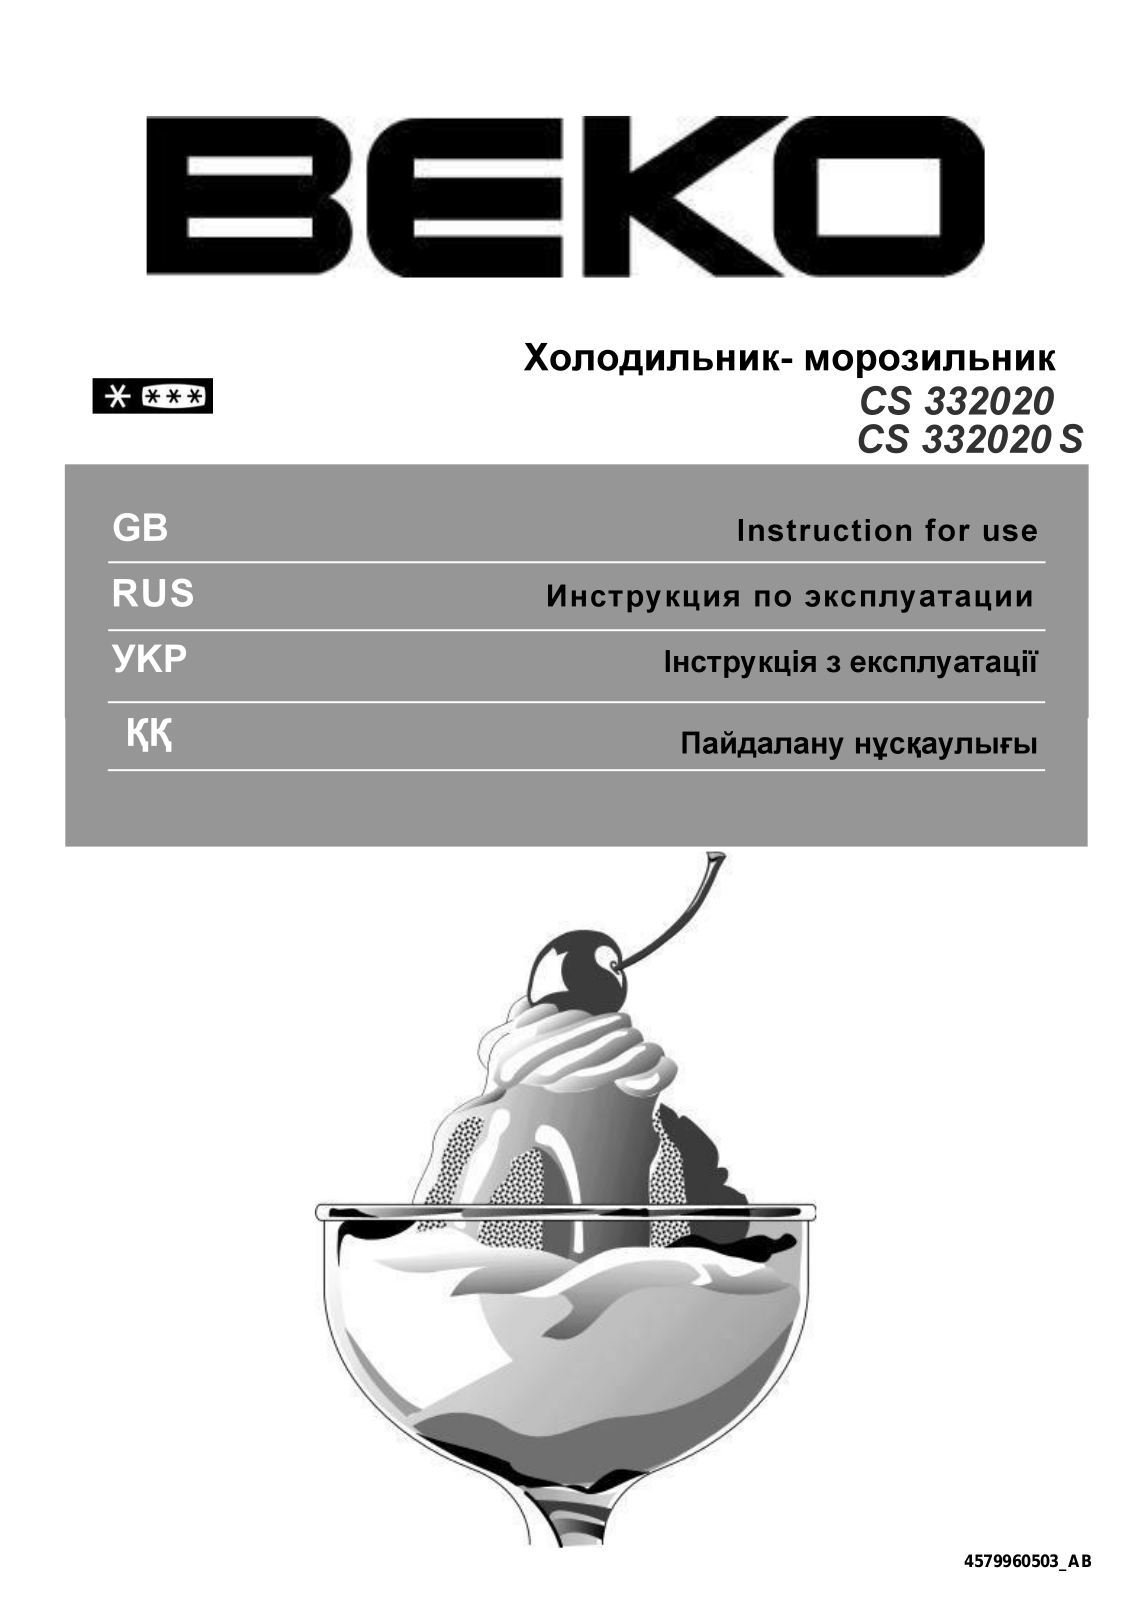 Beko CS 332020 User Manual